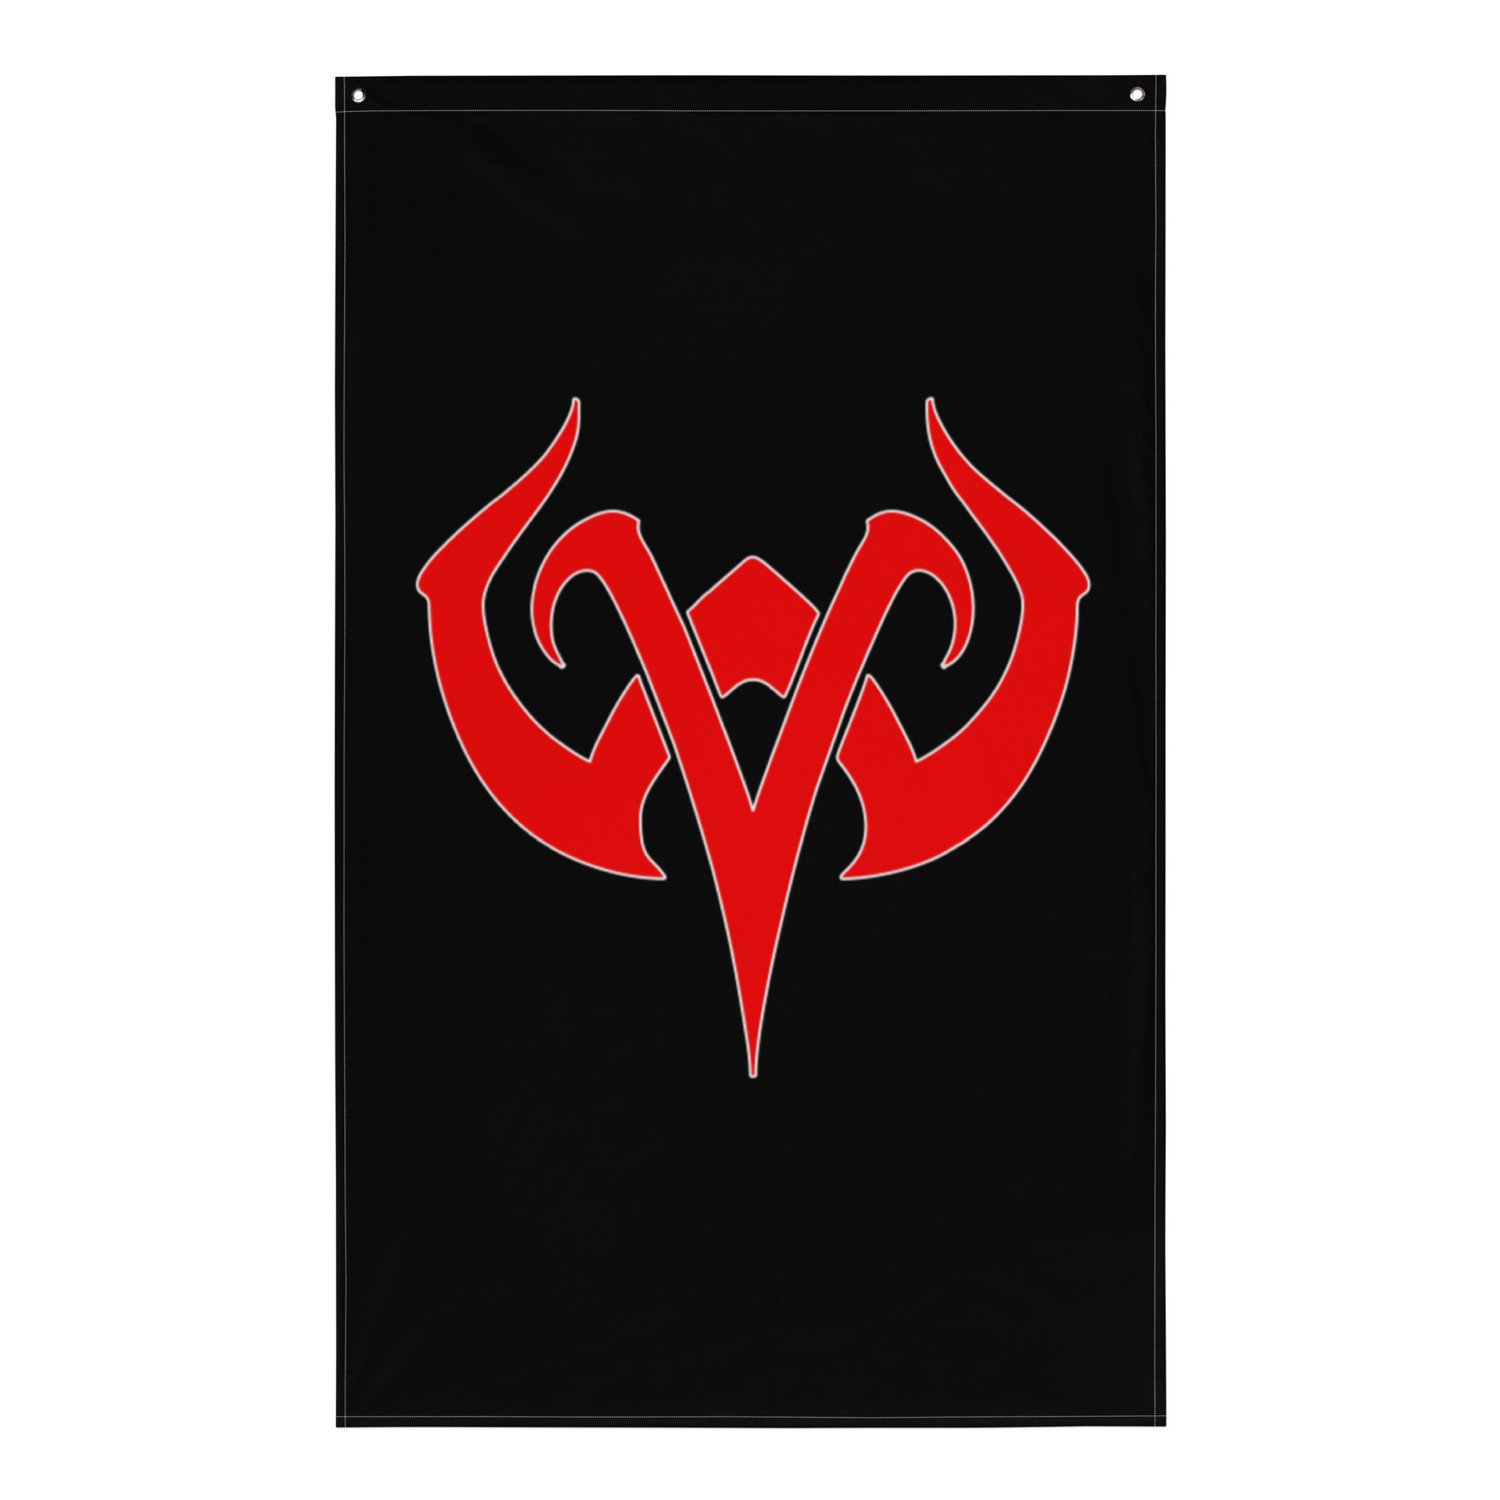 VW Emblem Red on Black (On Demand)